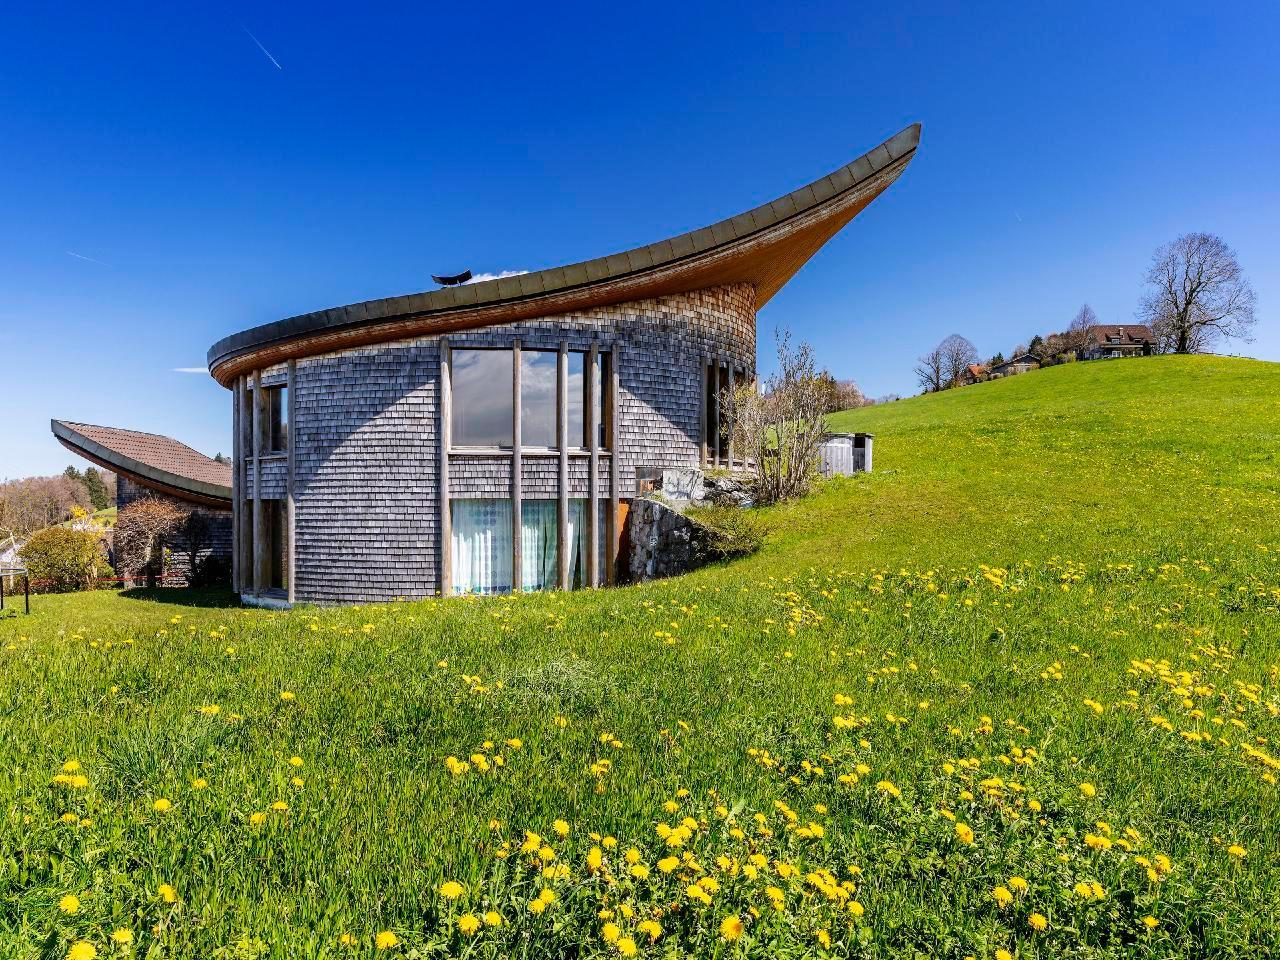 Luftiges Studio sunehus, mit Möglichkeit Bezu Ferienwohnung in der Schweiz